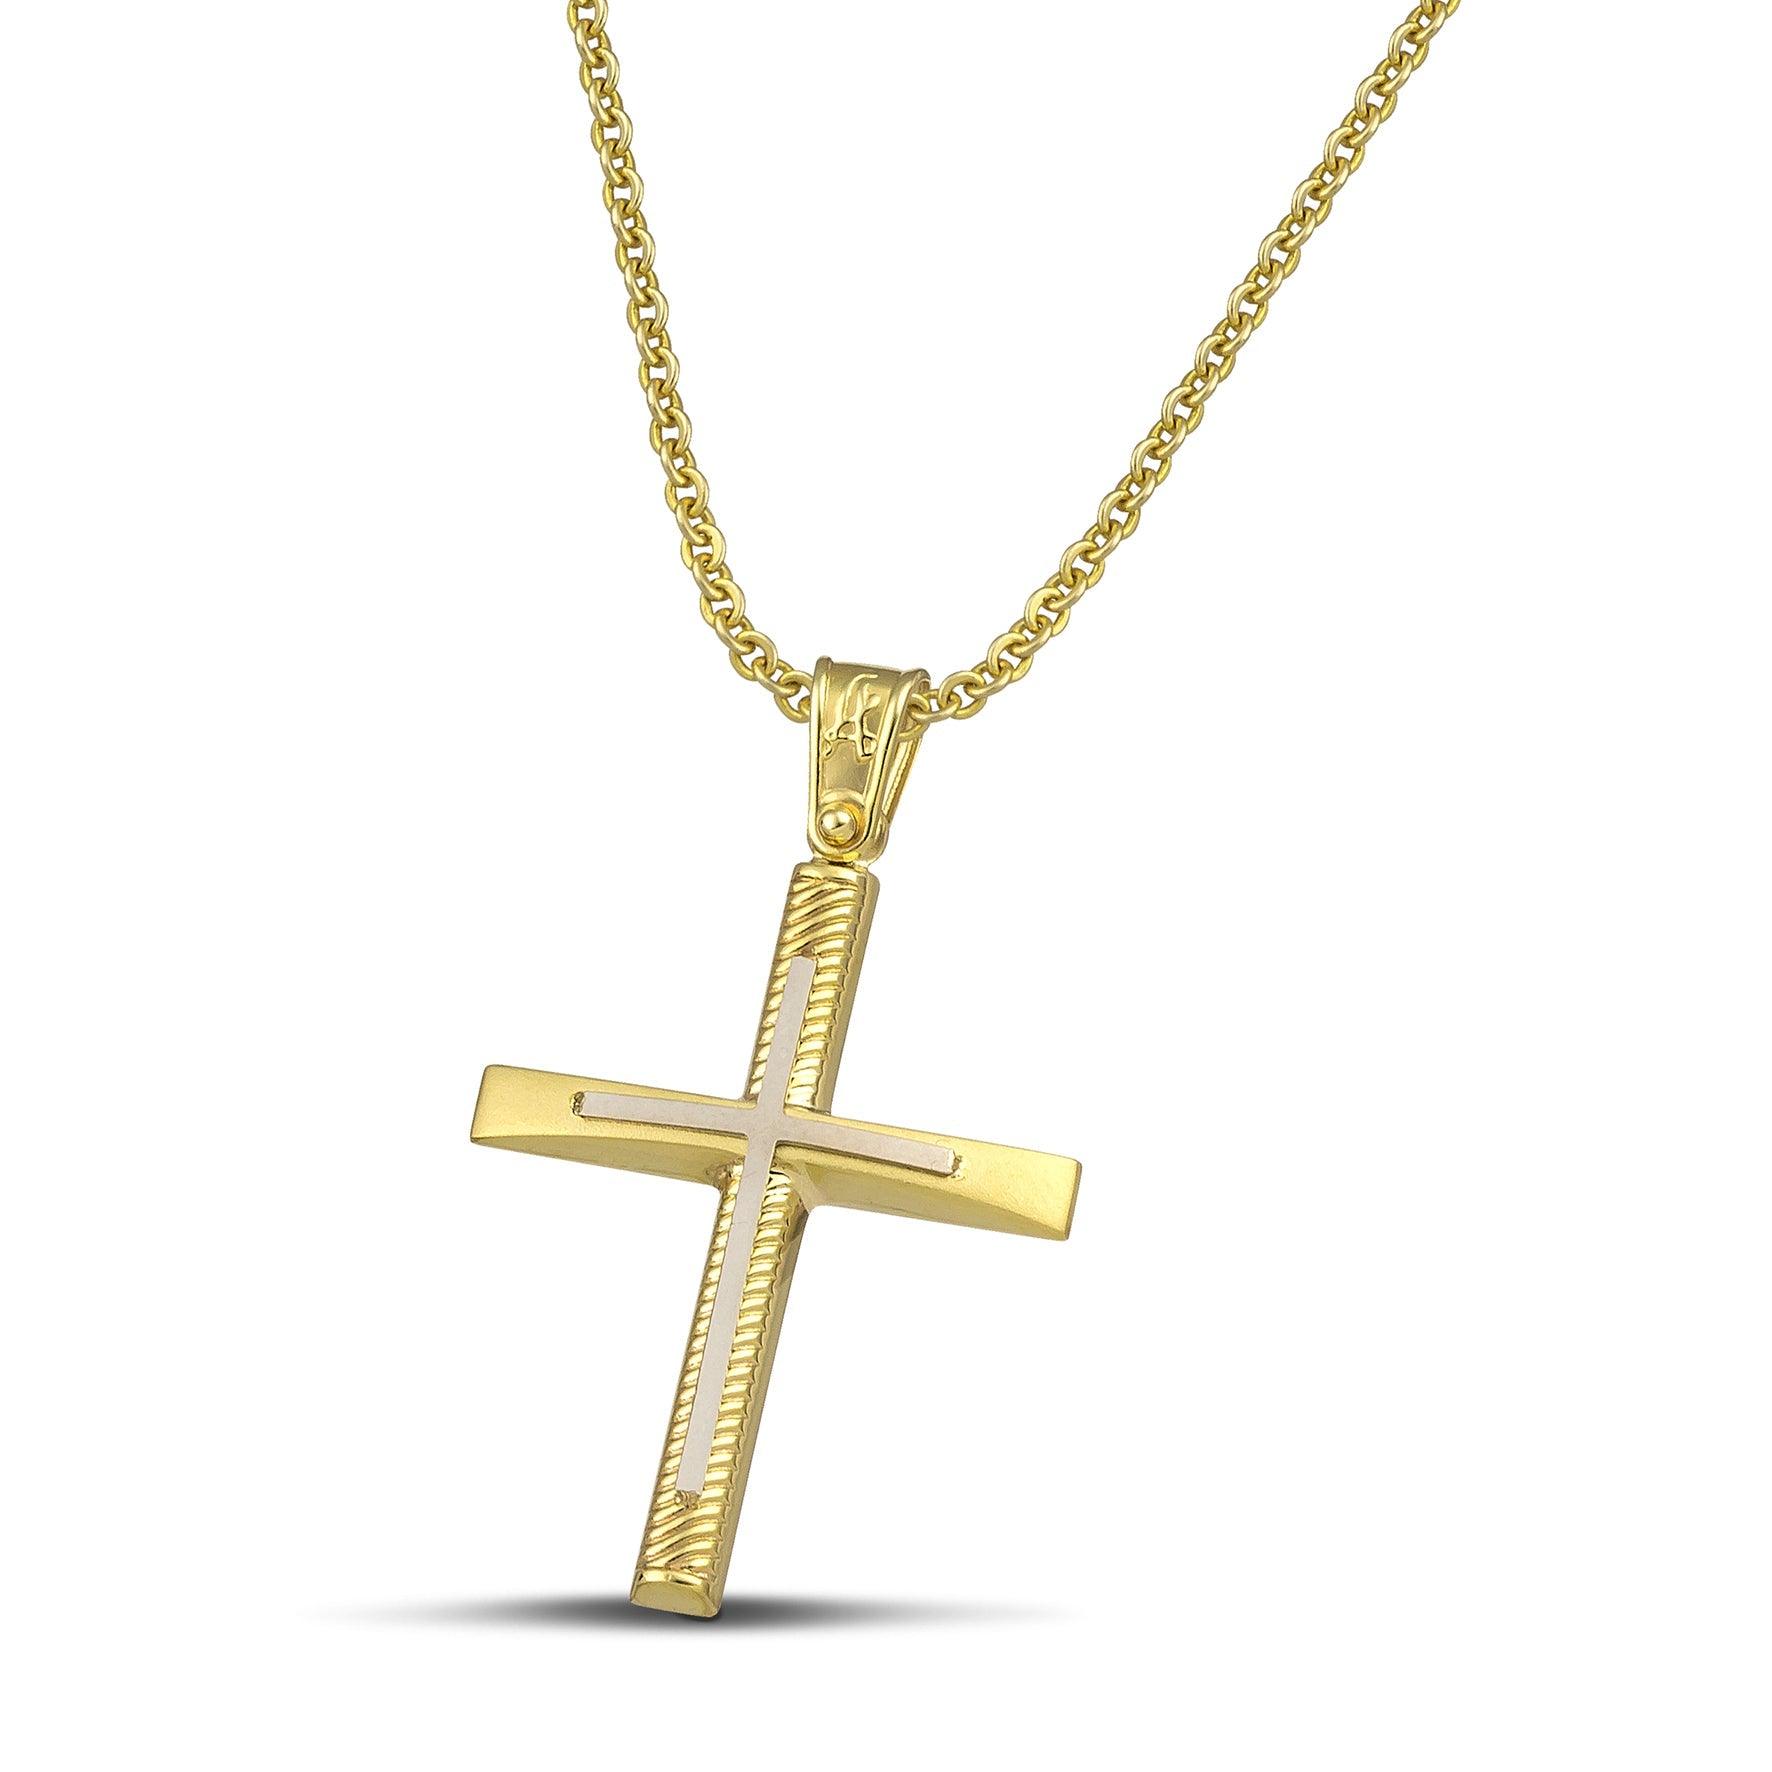 Σταυρός βάπτισης χρυσός Κ14 για γυναίκα. Διαθέτει σκαλιστά σχέδια και λευκόχρυσο σταυρό, με λεπτή αλυσίδα.